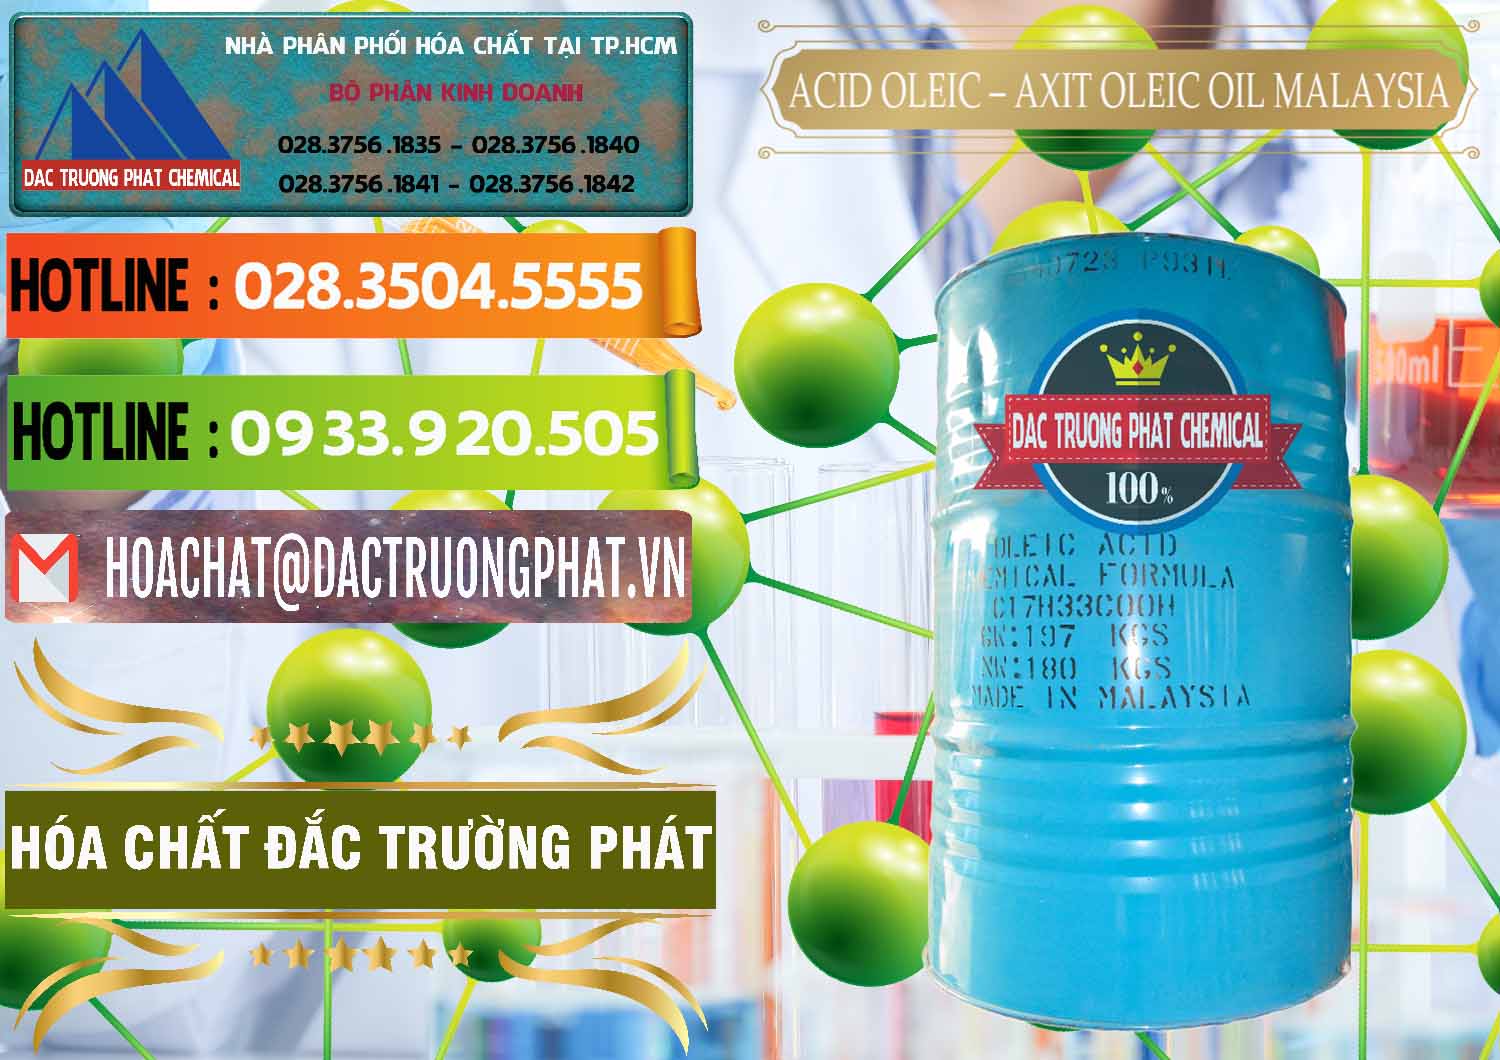 Công ty chuyên kinh doanh - bán Acid Oleic – Axit Oleic Oil Malaysia - 0013 - Chuyên phân phối và cung cấp hóa chất tại TP.HCM - cungcaphoachat.com.vn